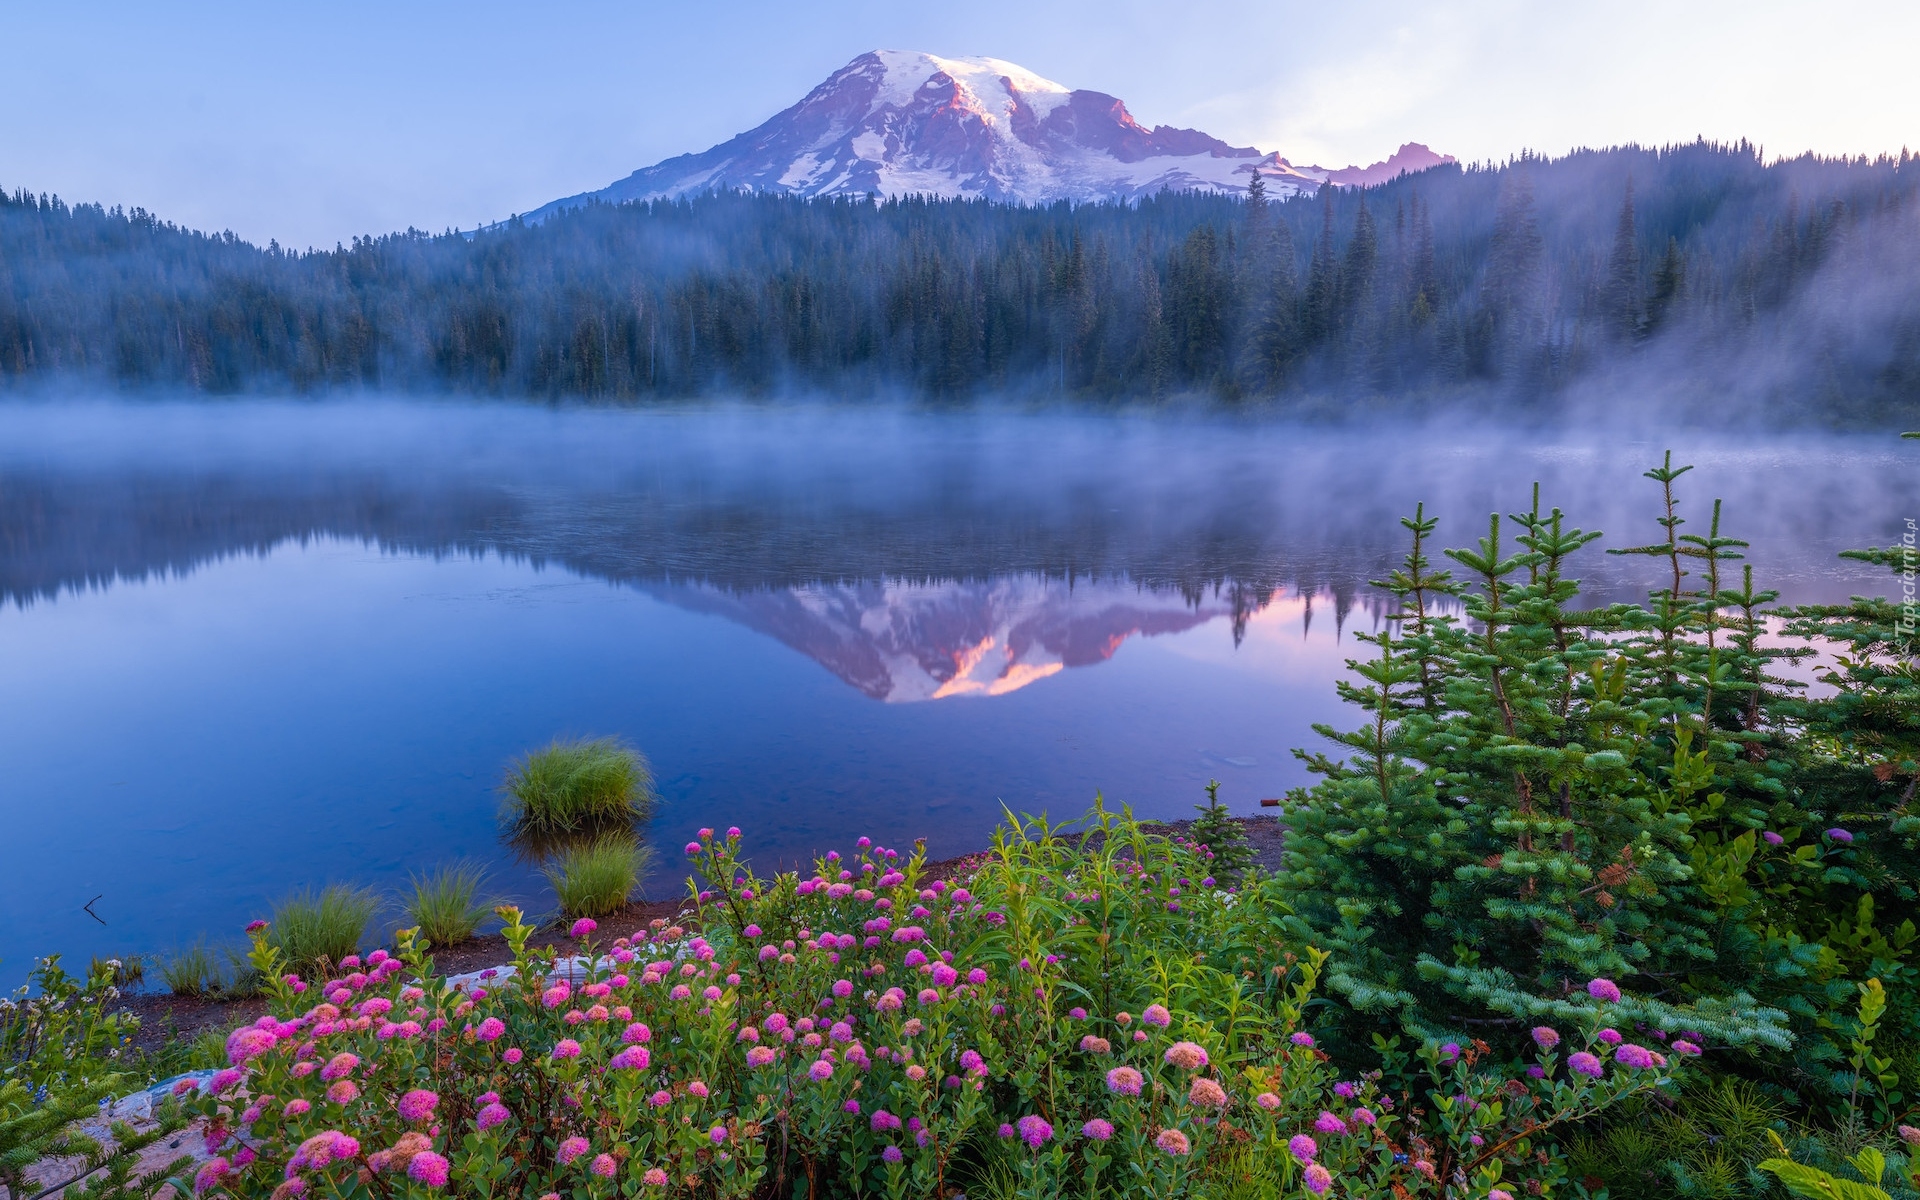 Park Narodowy Mount Rainier, Góry, Stratowulkan Mount Rainier, Drzewa, Świerki, Kwiaty, Jezioro, Odbicie, Mgła, Stan Waszyngton, Stany Zjednoczone